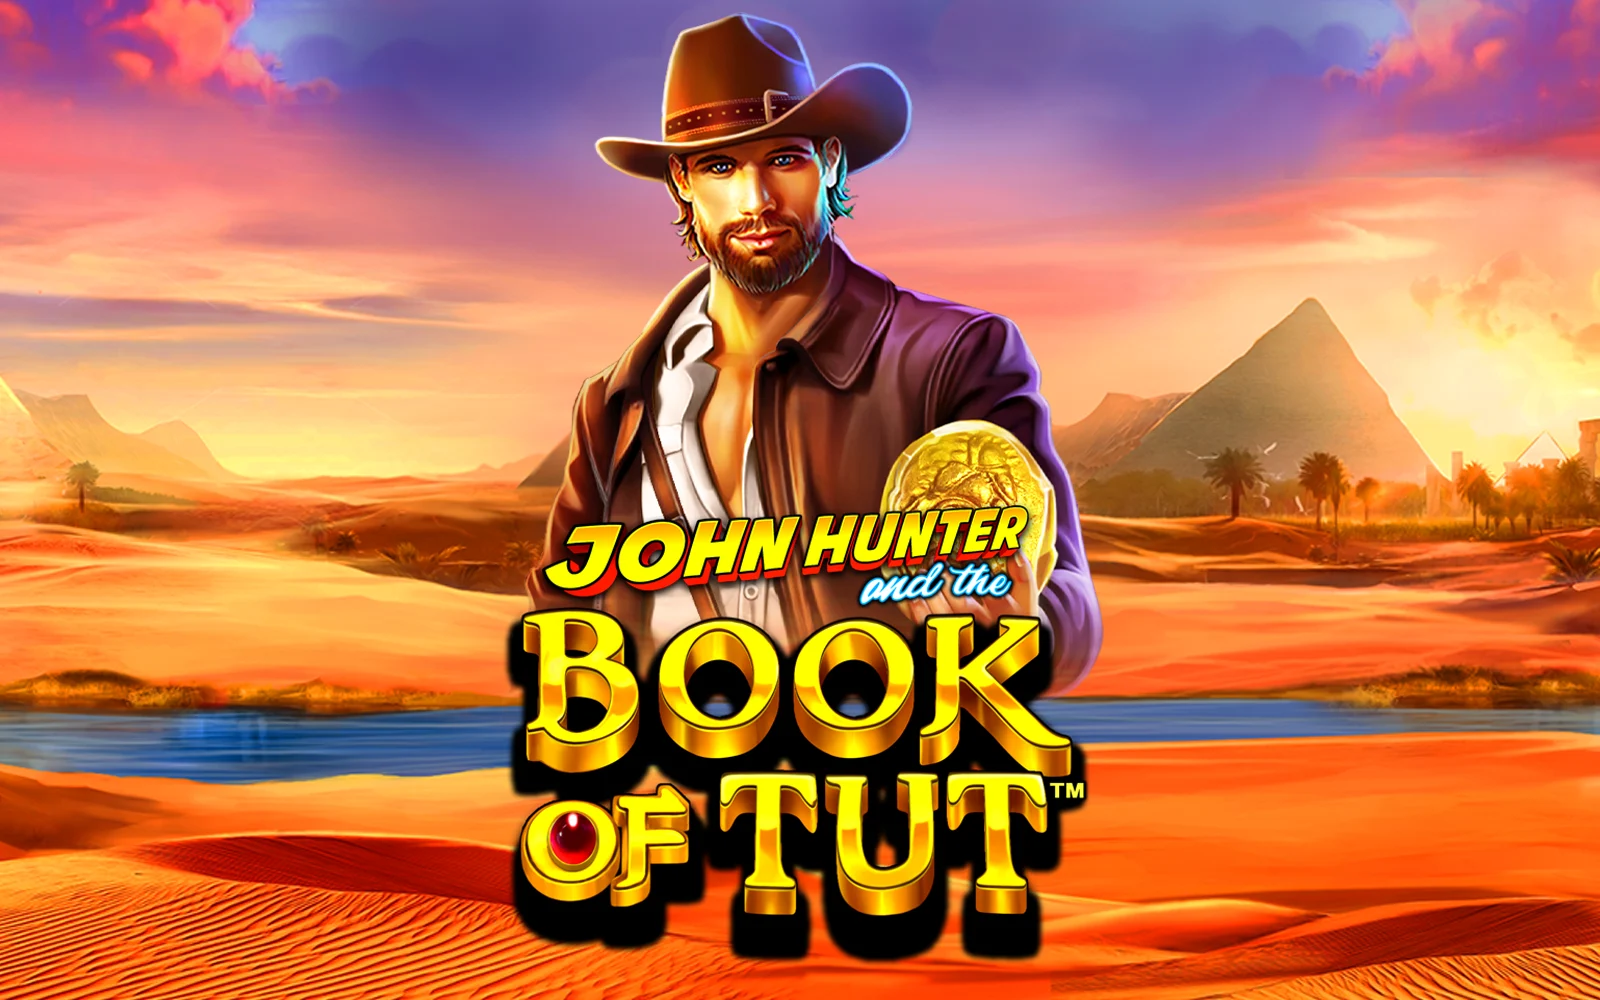 Juega a John Hunter and the Book of Tut™ en el casino en línea de Starcasino.be